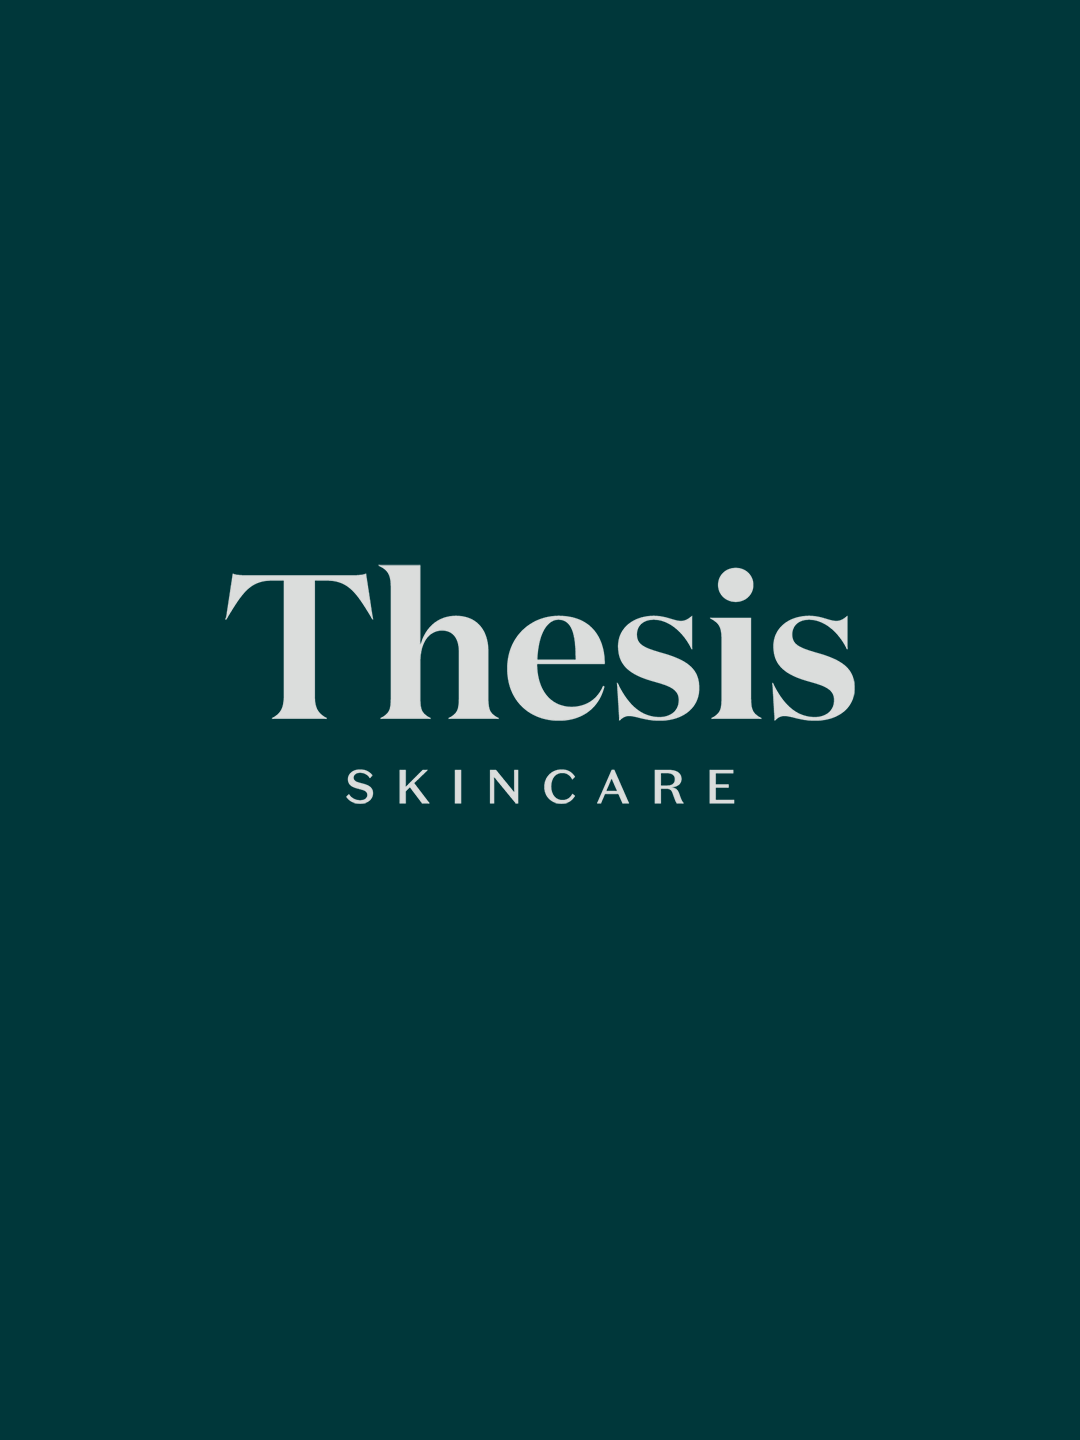 Thesis Skincare – Duplicate